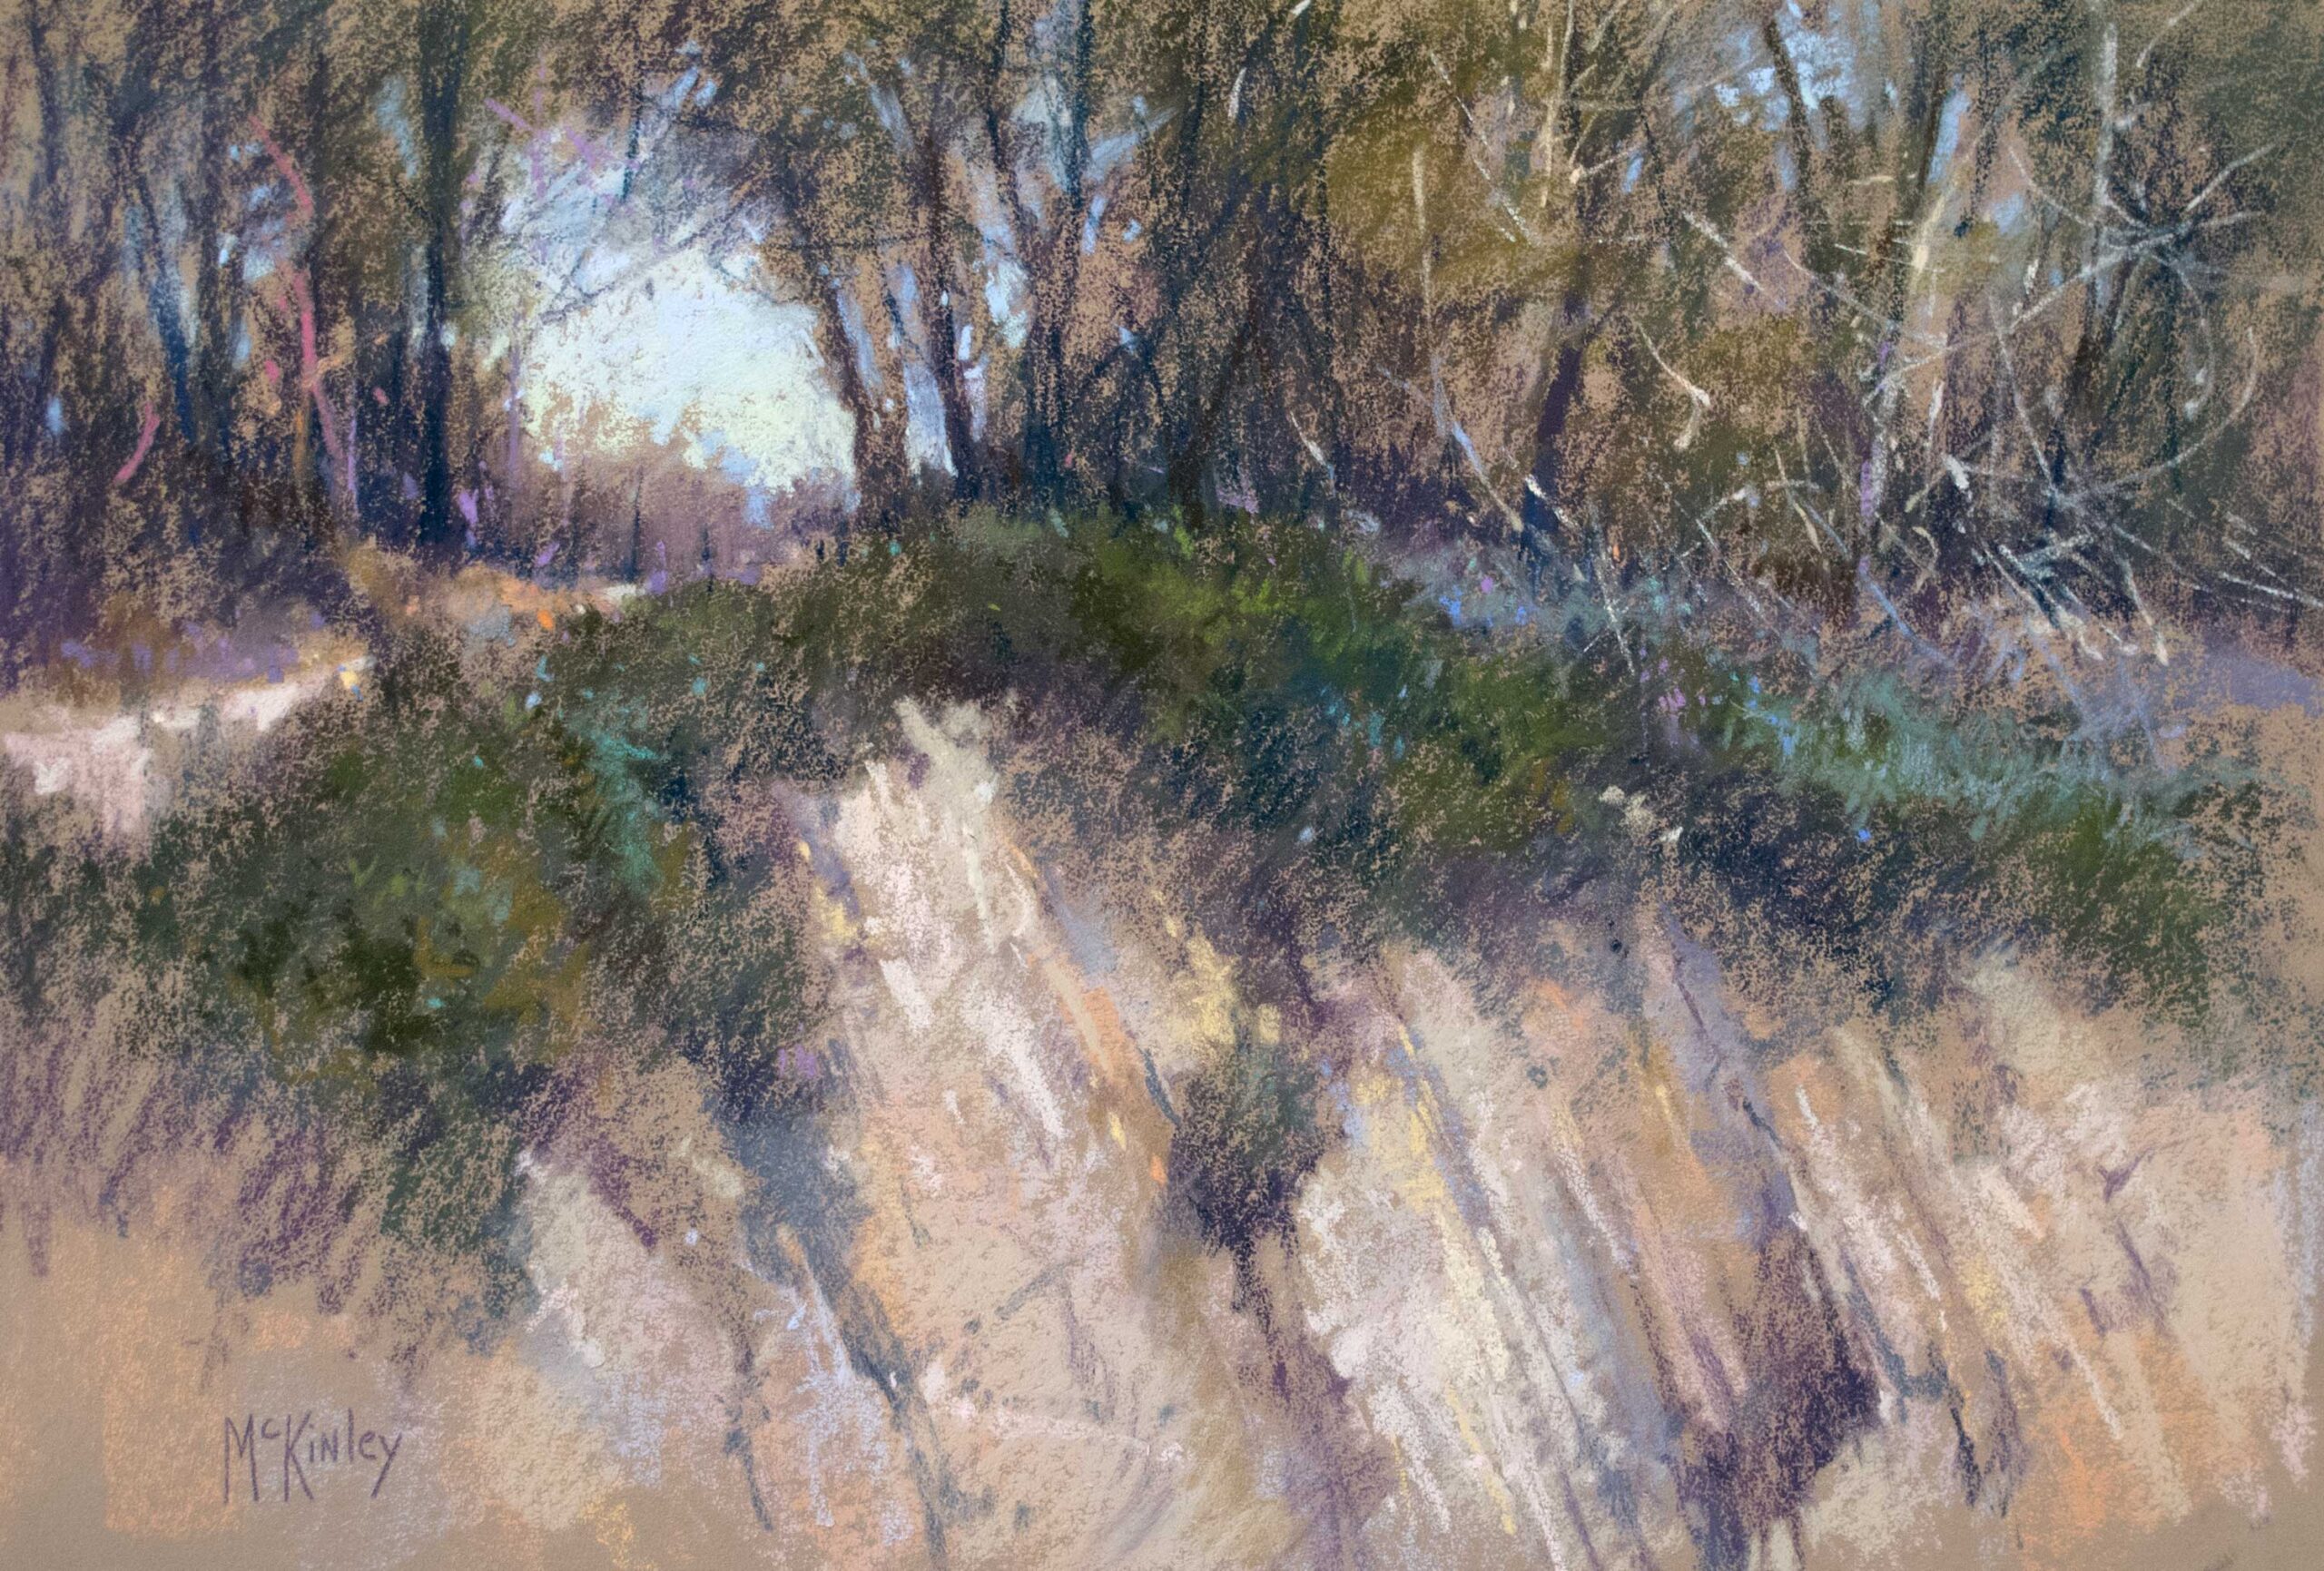 Richard McKinley, "Cliffs of Golita," 2014, pastel, 12 x 18 in., Private collection, Plein air 